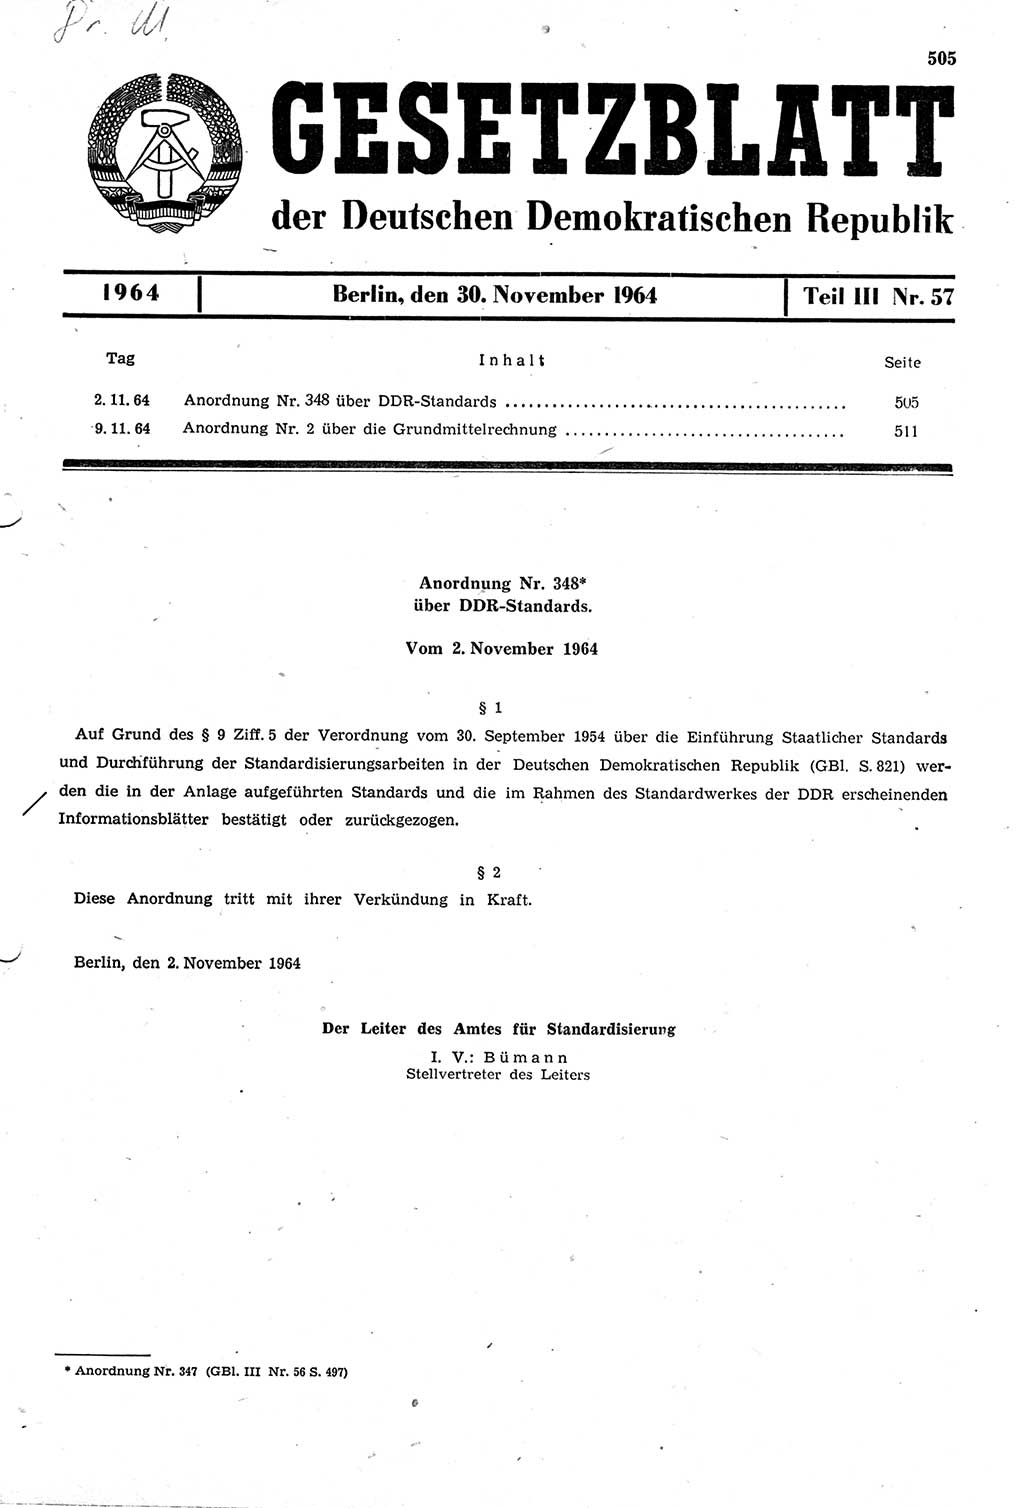 Gesetzblatt (GBl.) der Deutschen Demokratischen Republik (DDR) Teil ⅠⅠⅠ 1964, Seite 505 (GBl. DDR ⅠⅠⅠ 1964, S. 505)